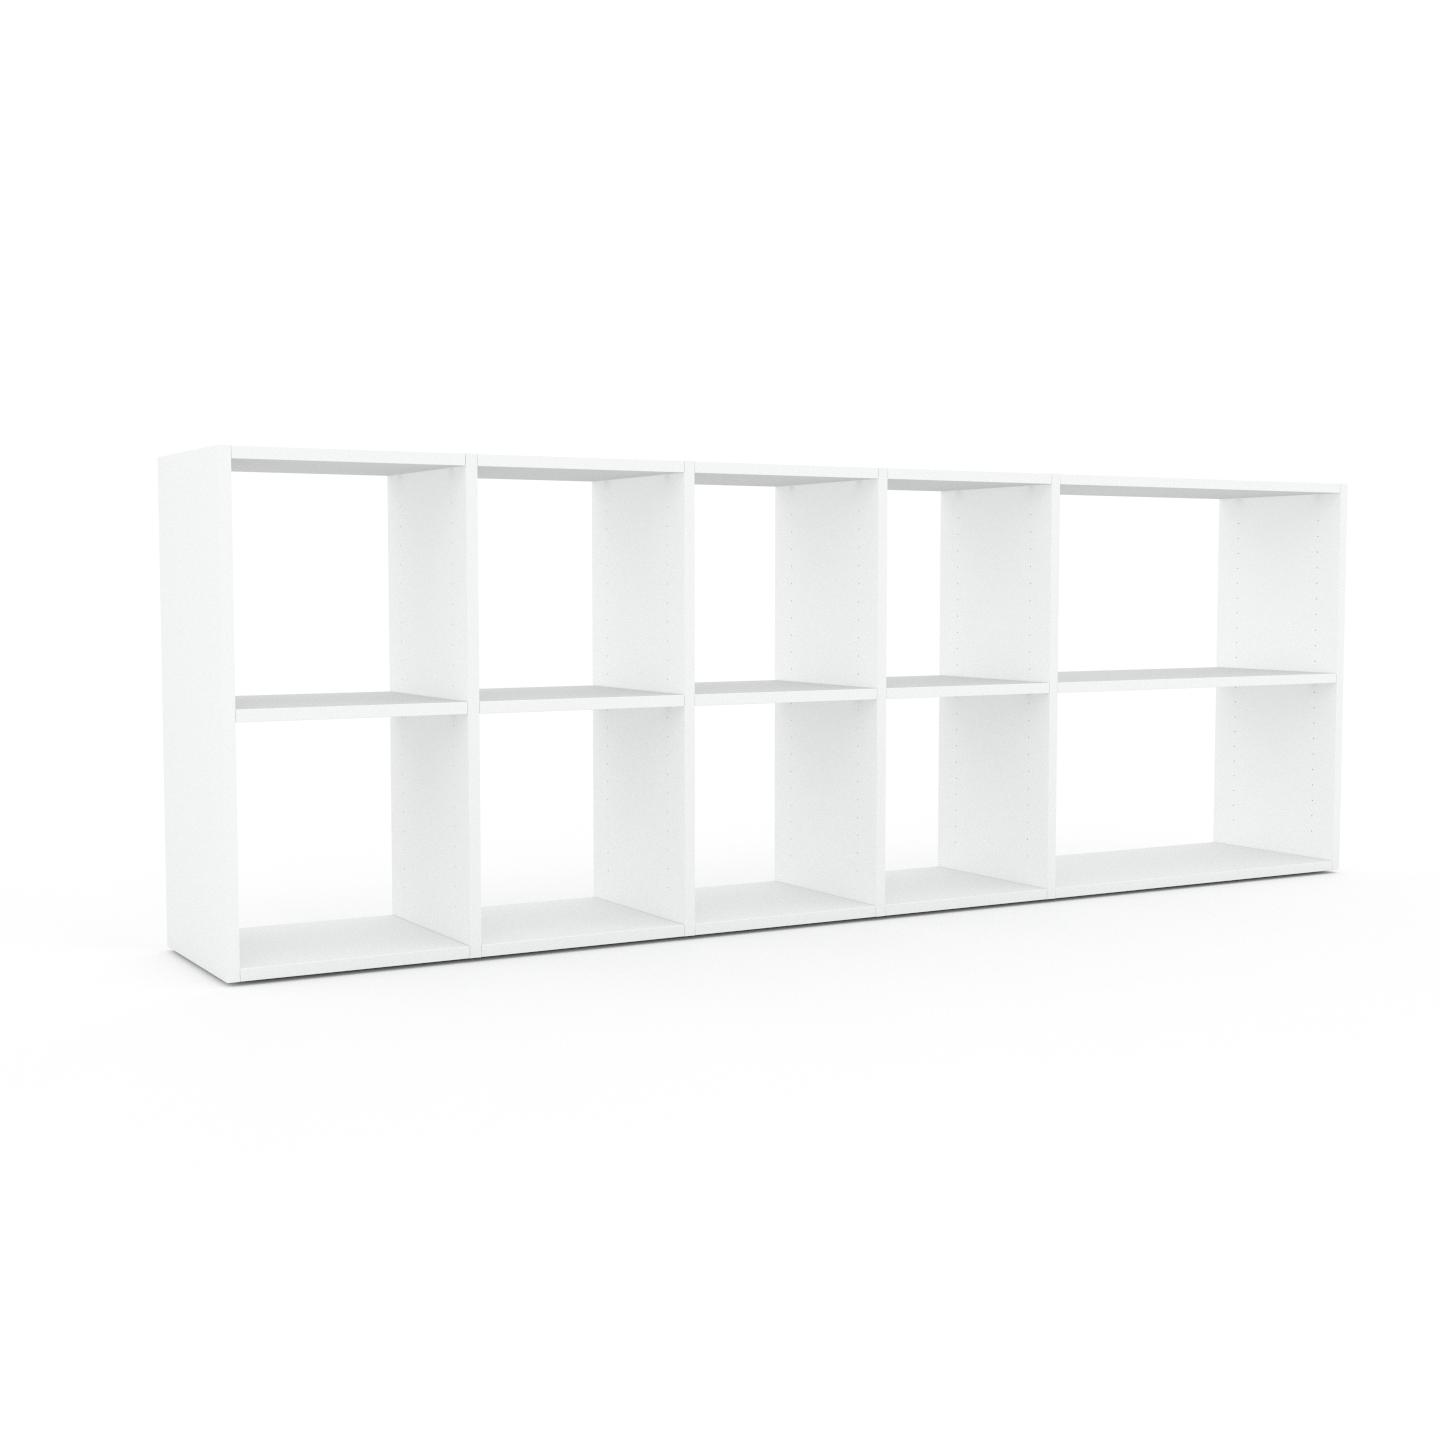 MYCS Bücherregal Weiß - Modernes Regal für Bücher: Hochwertige Qualität, einzigartiges Design - 231 x 80 x 35 cm, Individuell konfigurierbar